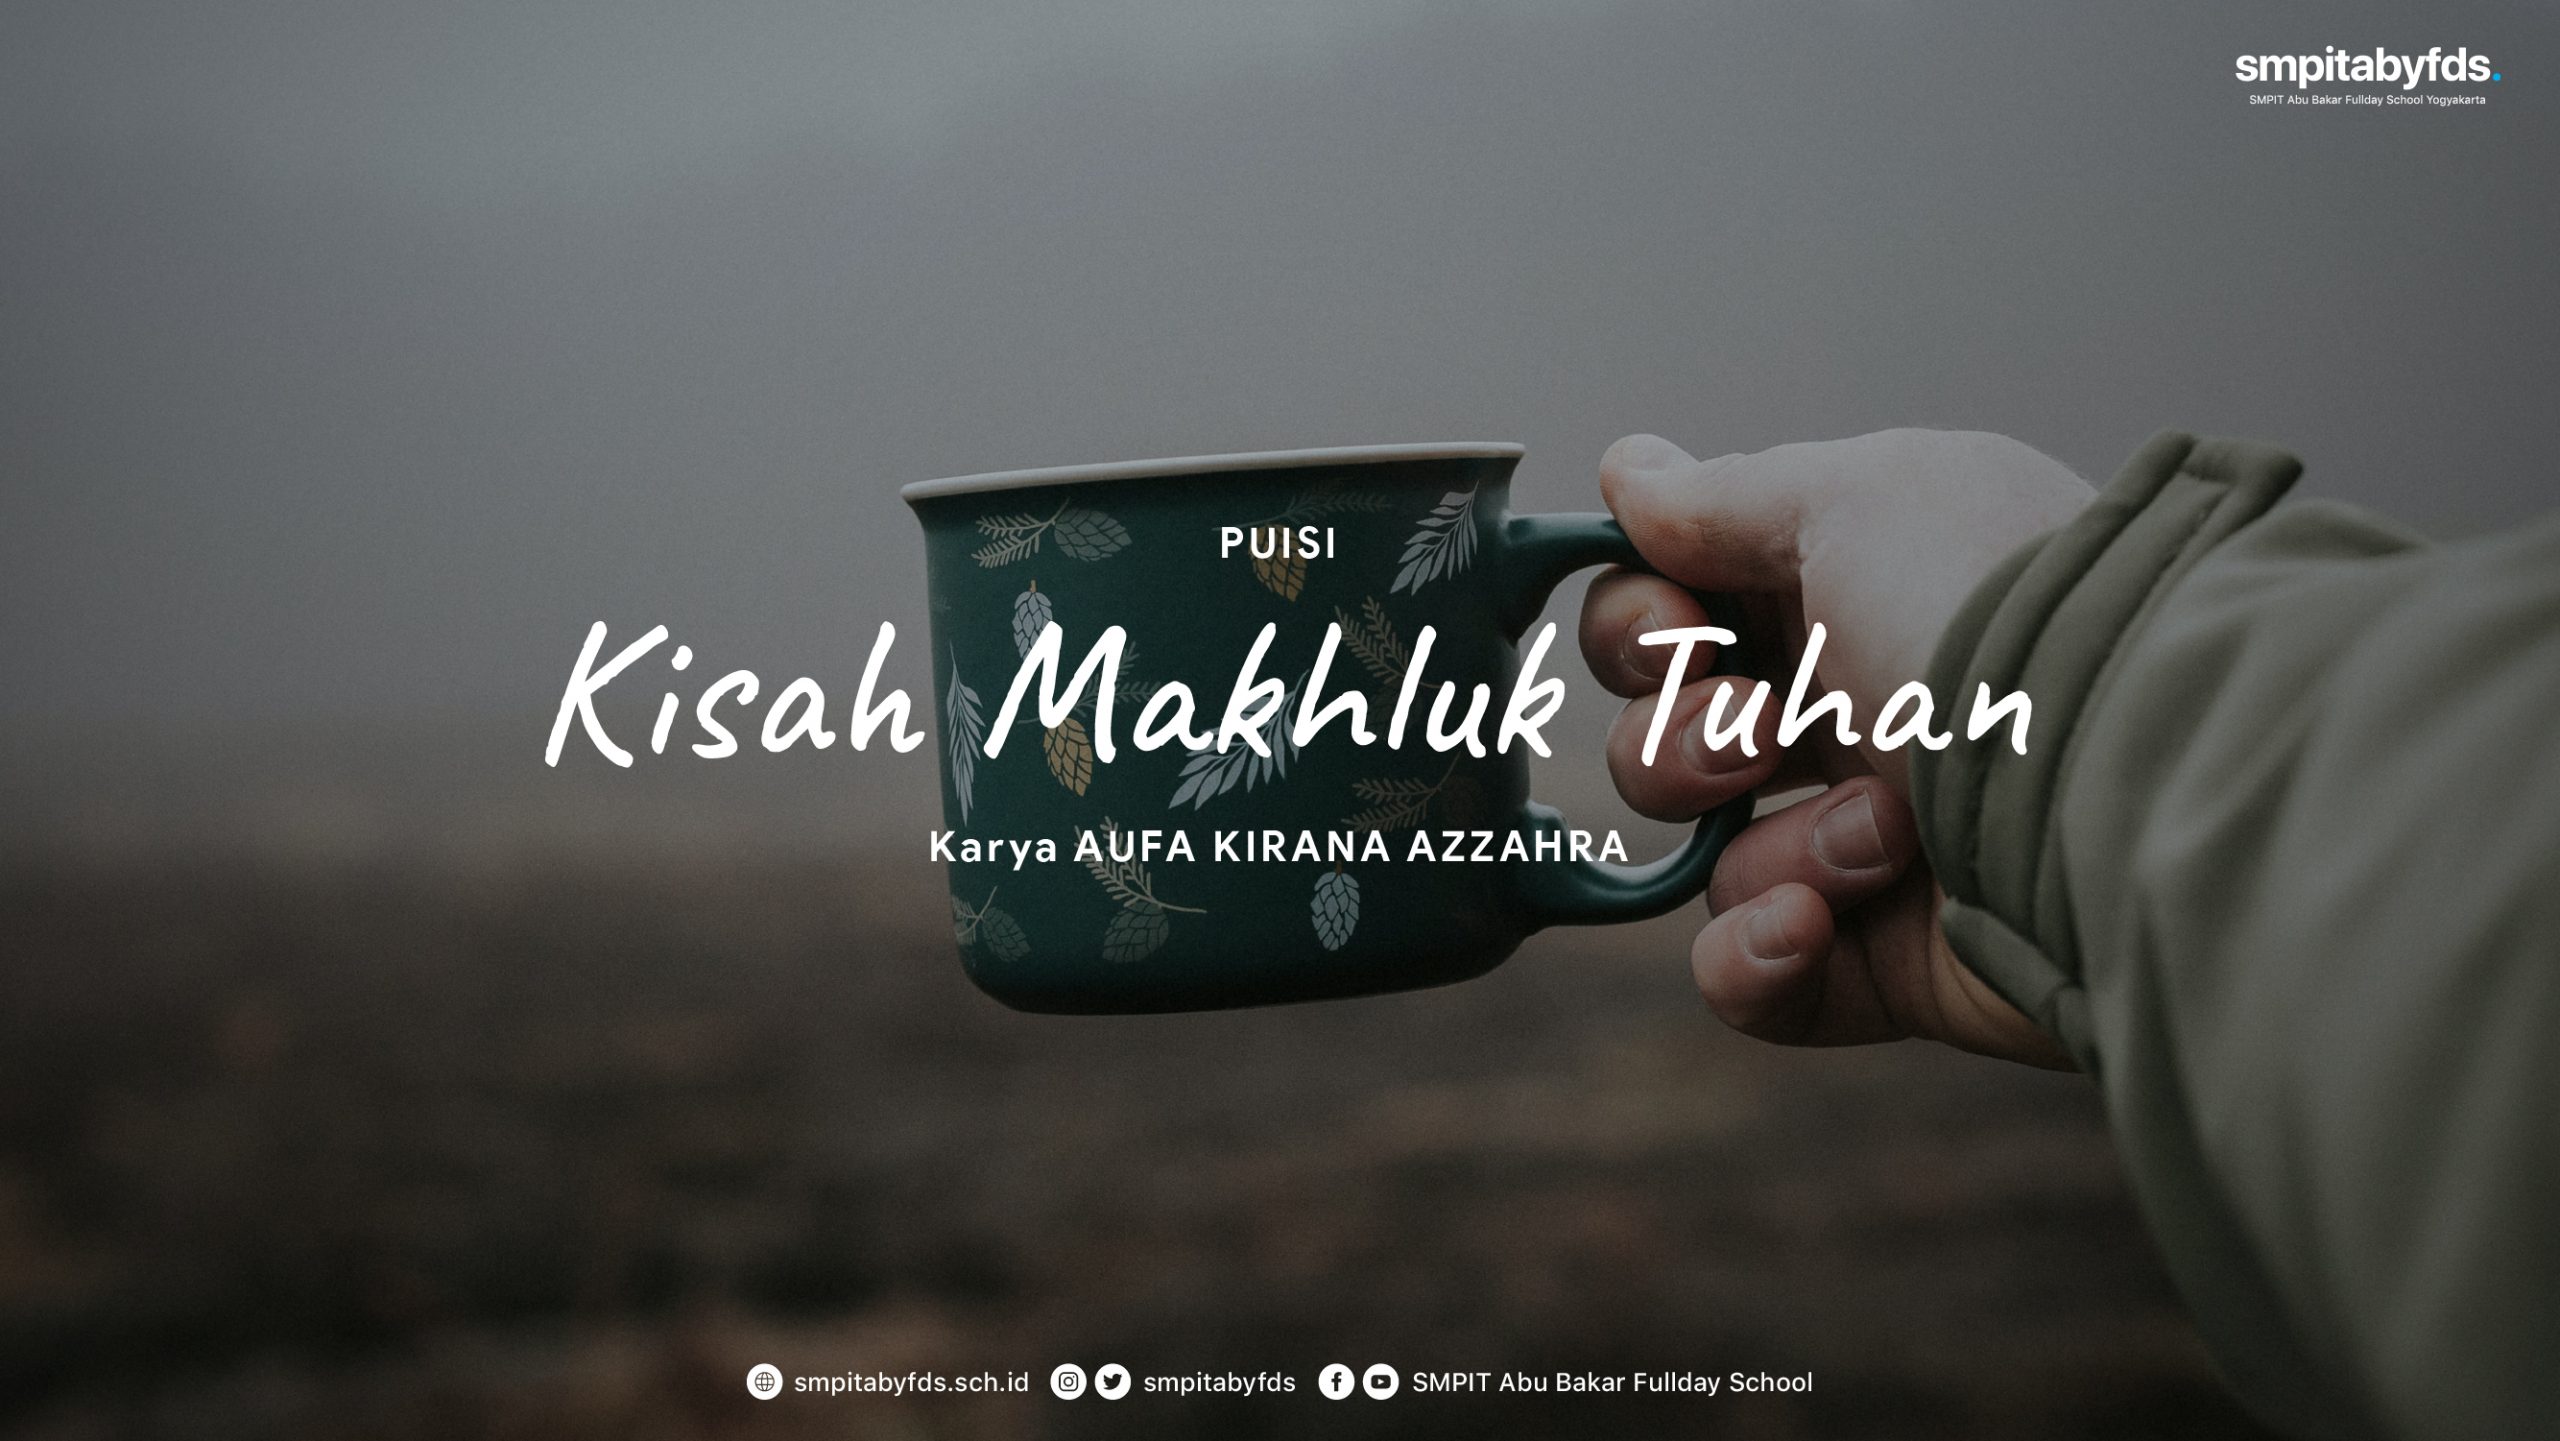 You are currently viewing Puisi Kisah Makhluk Tuhan karya Aufa Kirana Azzahra